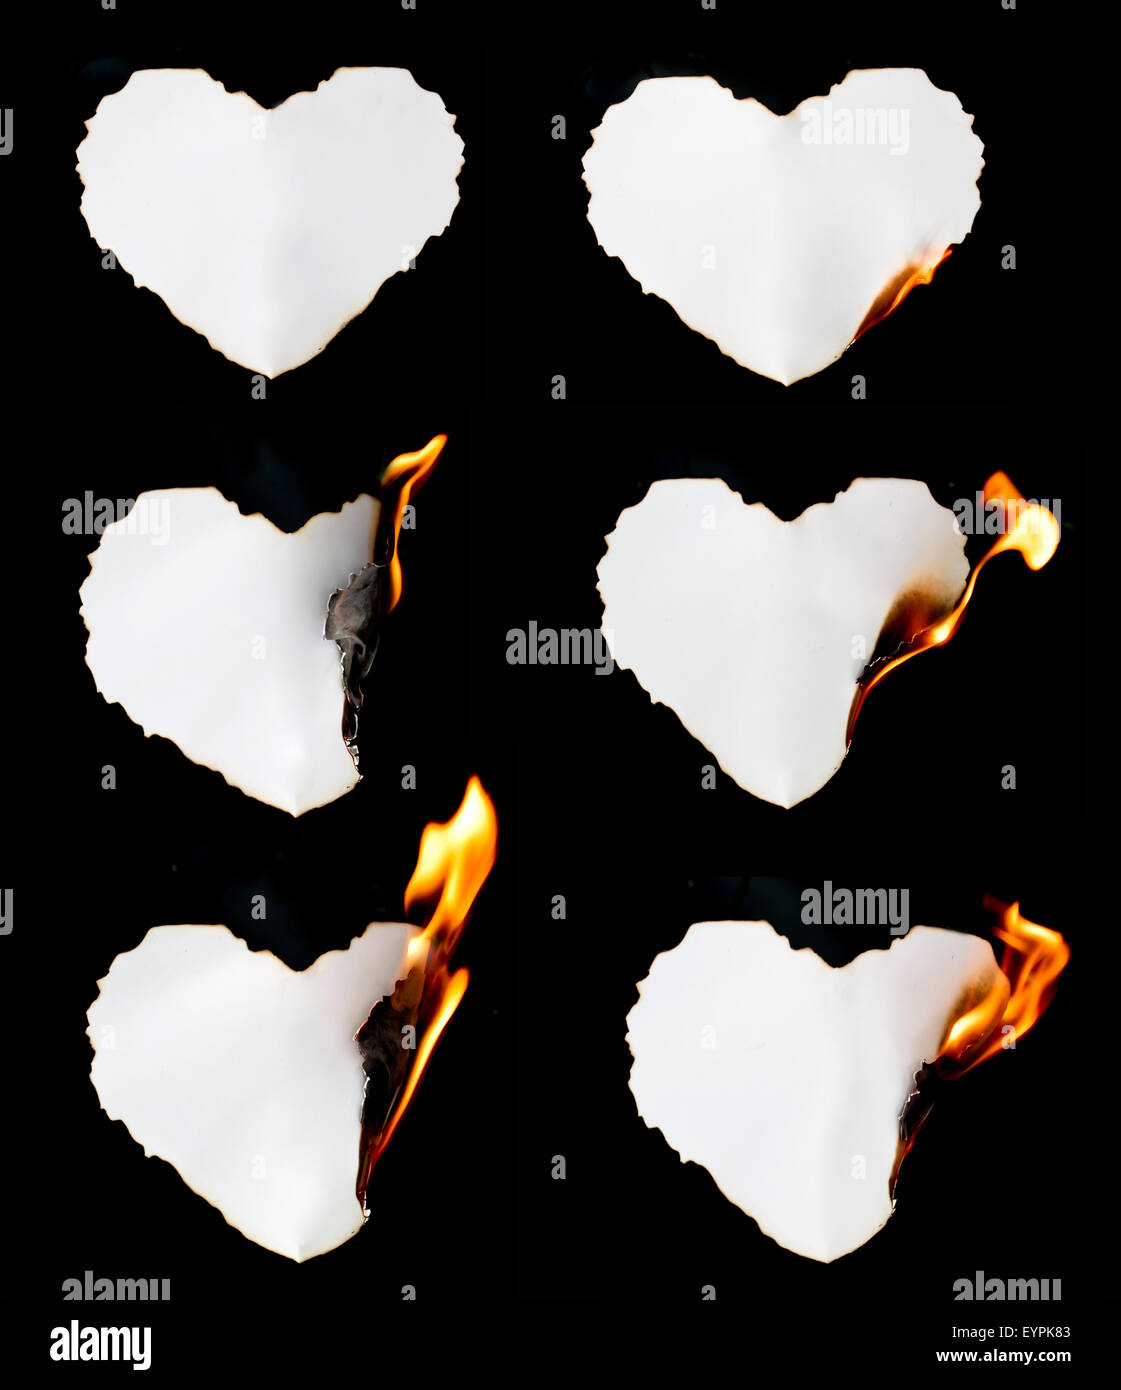 heart shape paper burning on black background Stock Photo